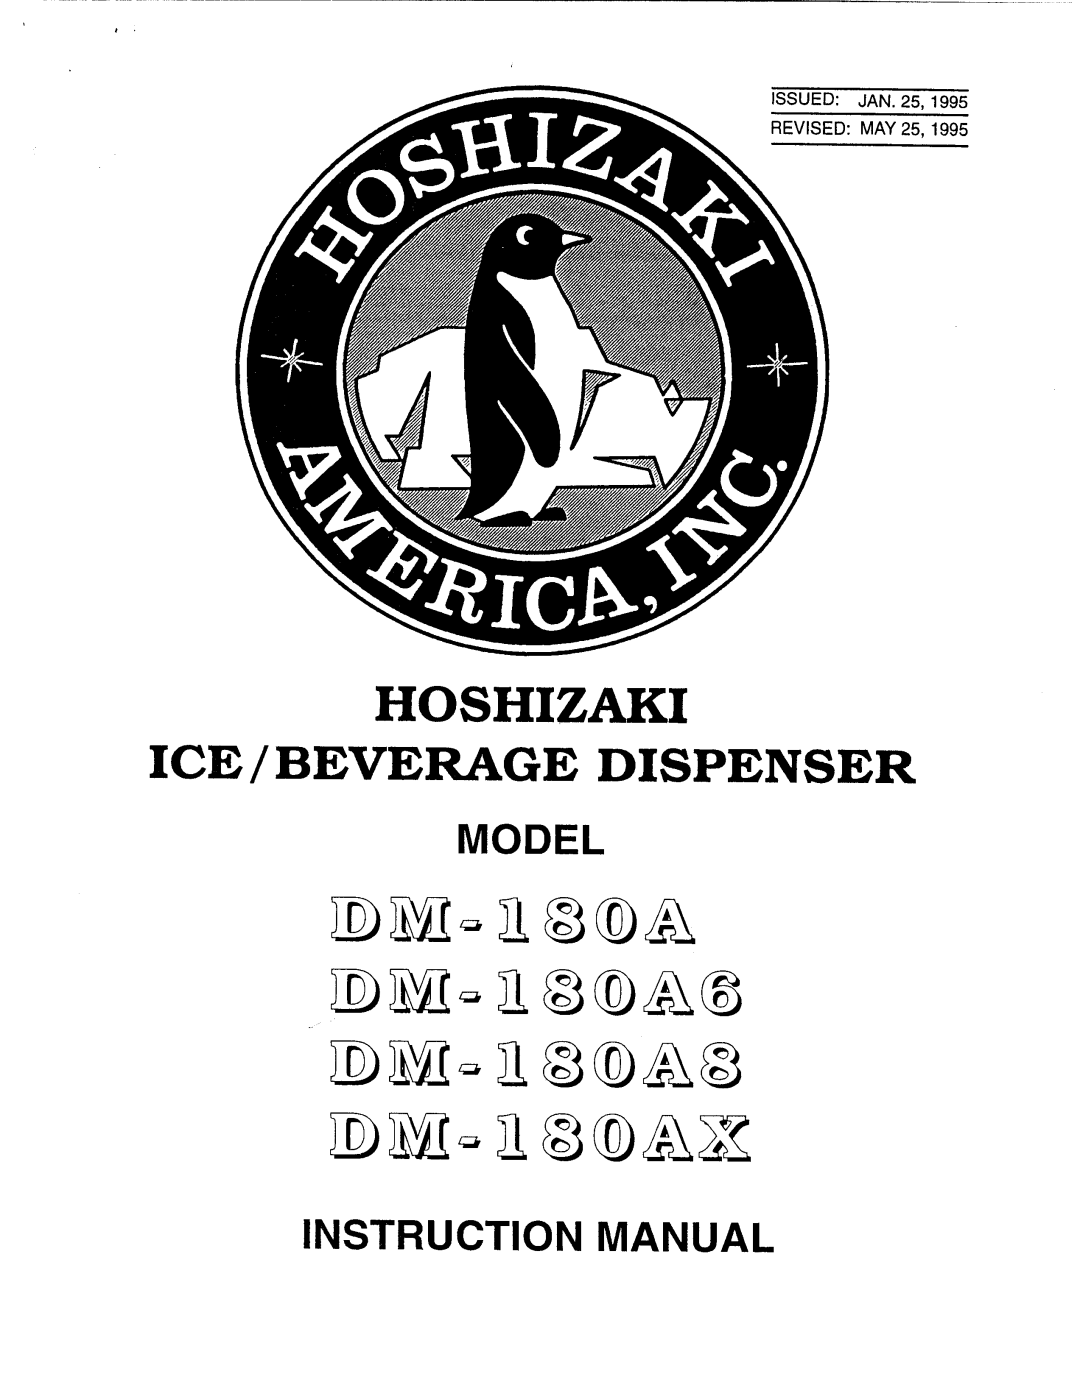 Hoshizaki DM-180A8, DM-180AX, DM-180A6 manual 